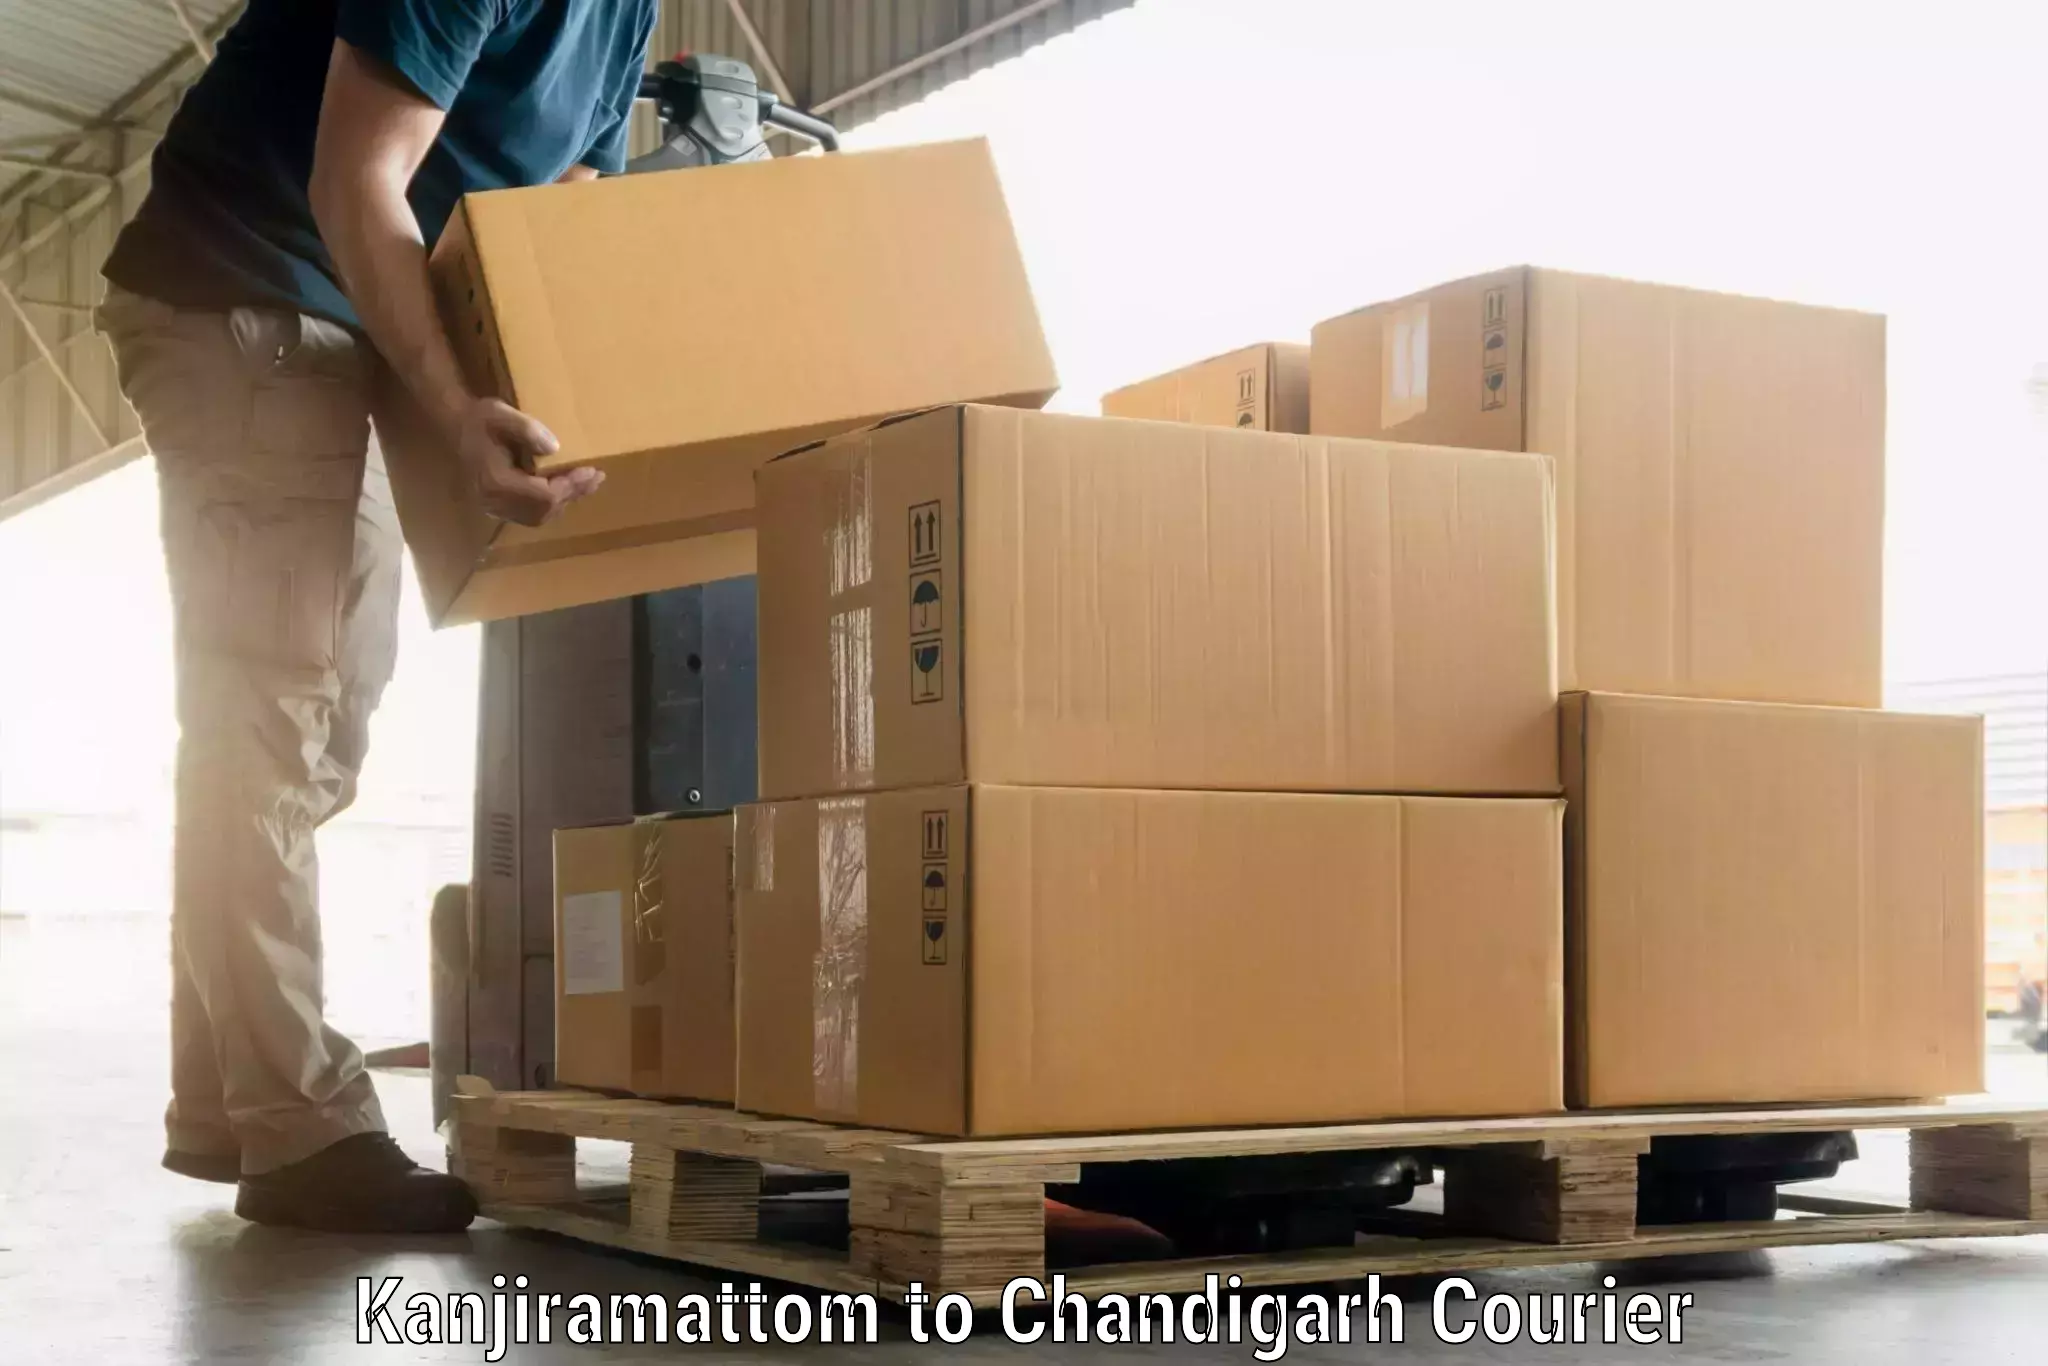 Door-to-door baggage service Kanjiramattom to Chandigarh